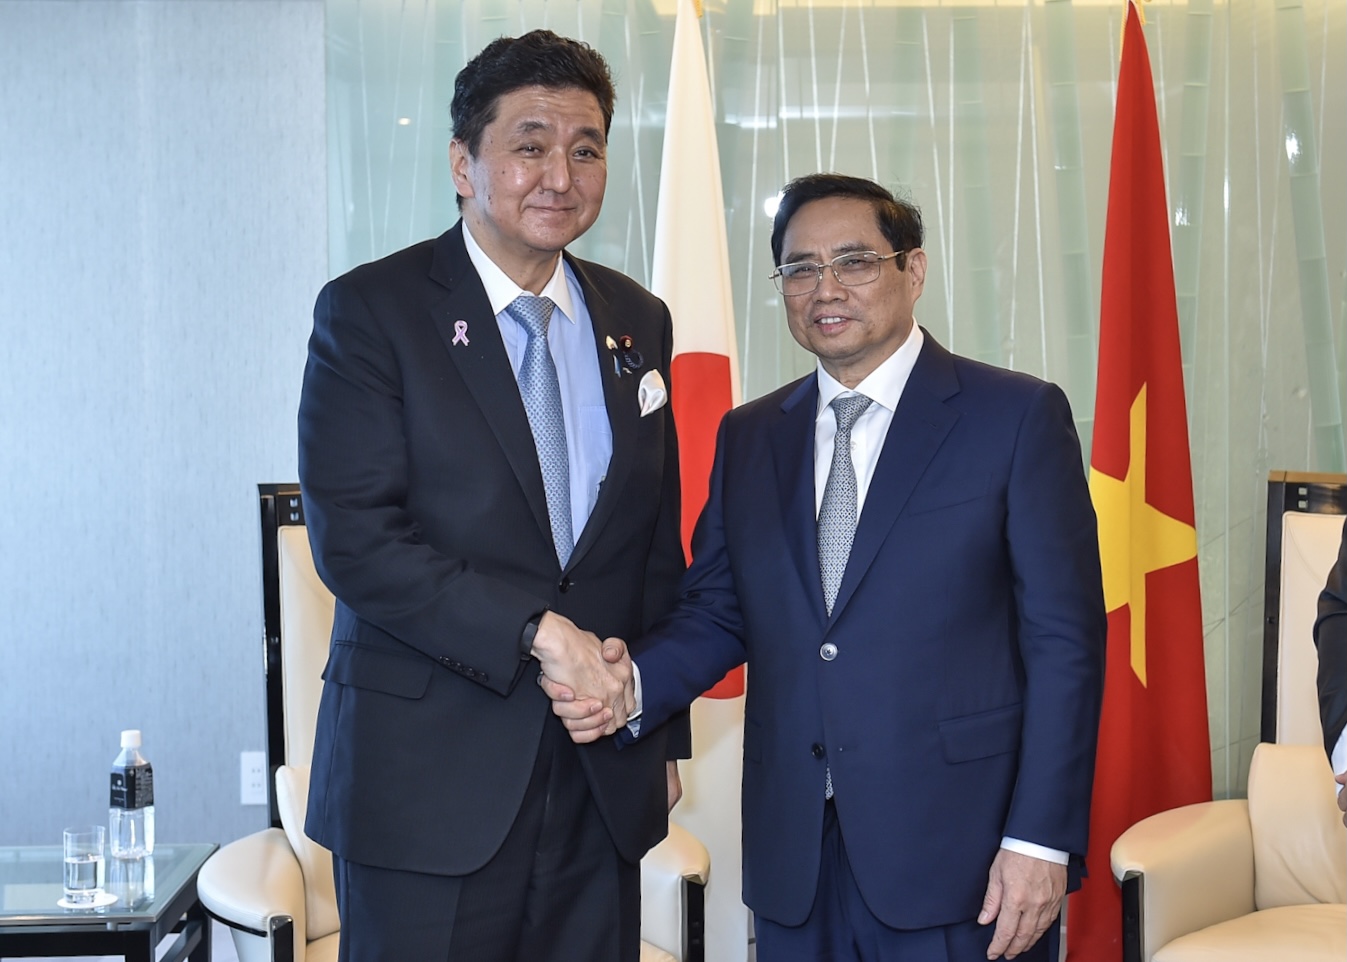 Hợp tác quốc phòng là một trụ cột hợp tác quan trọng giữa Việt Nam và Nhật Bản